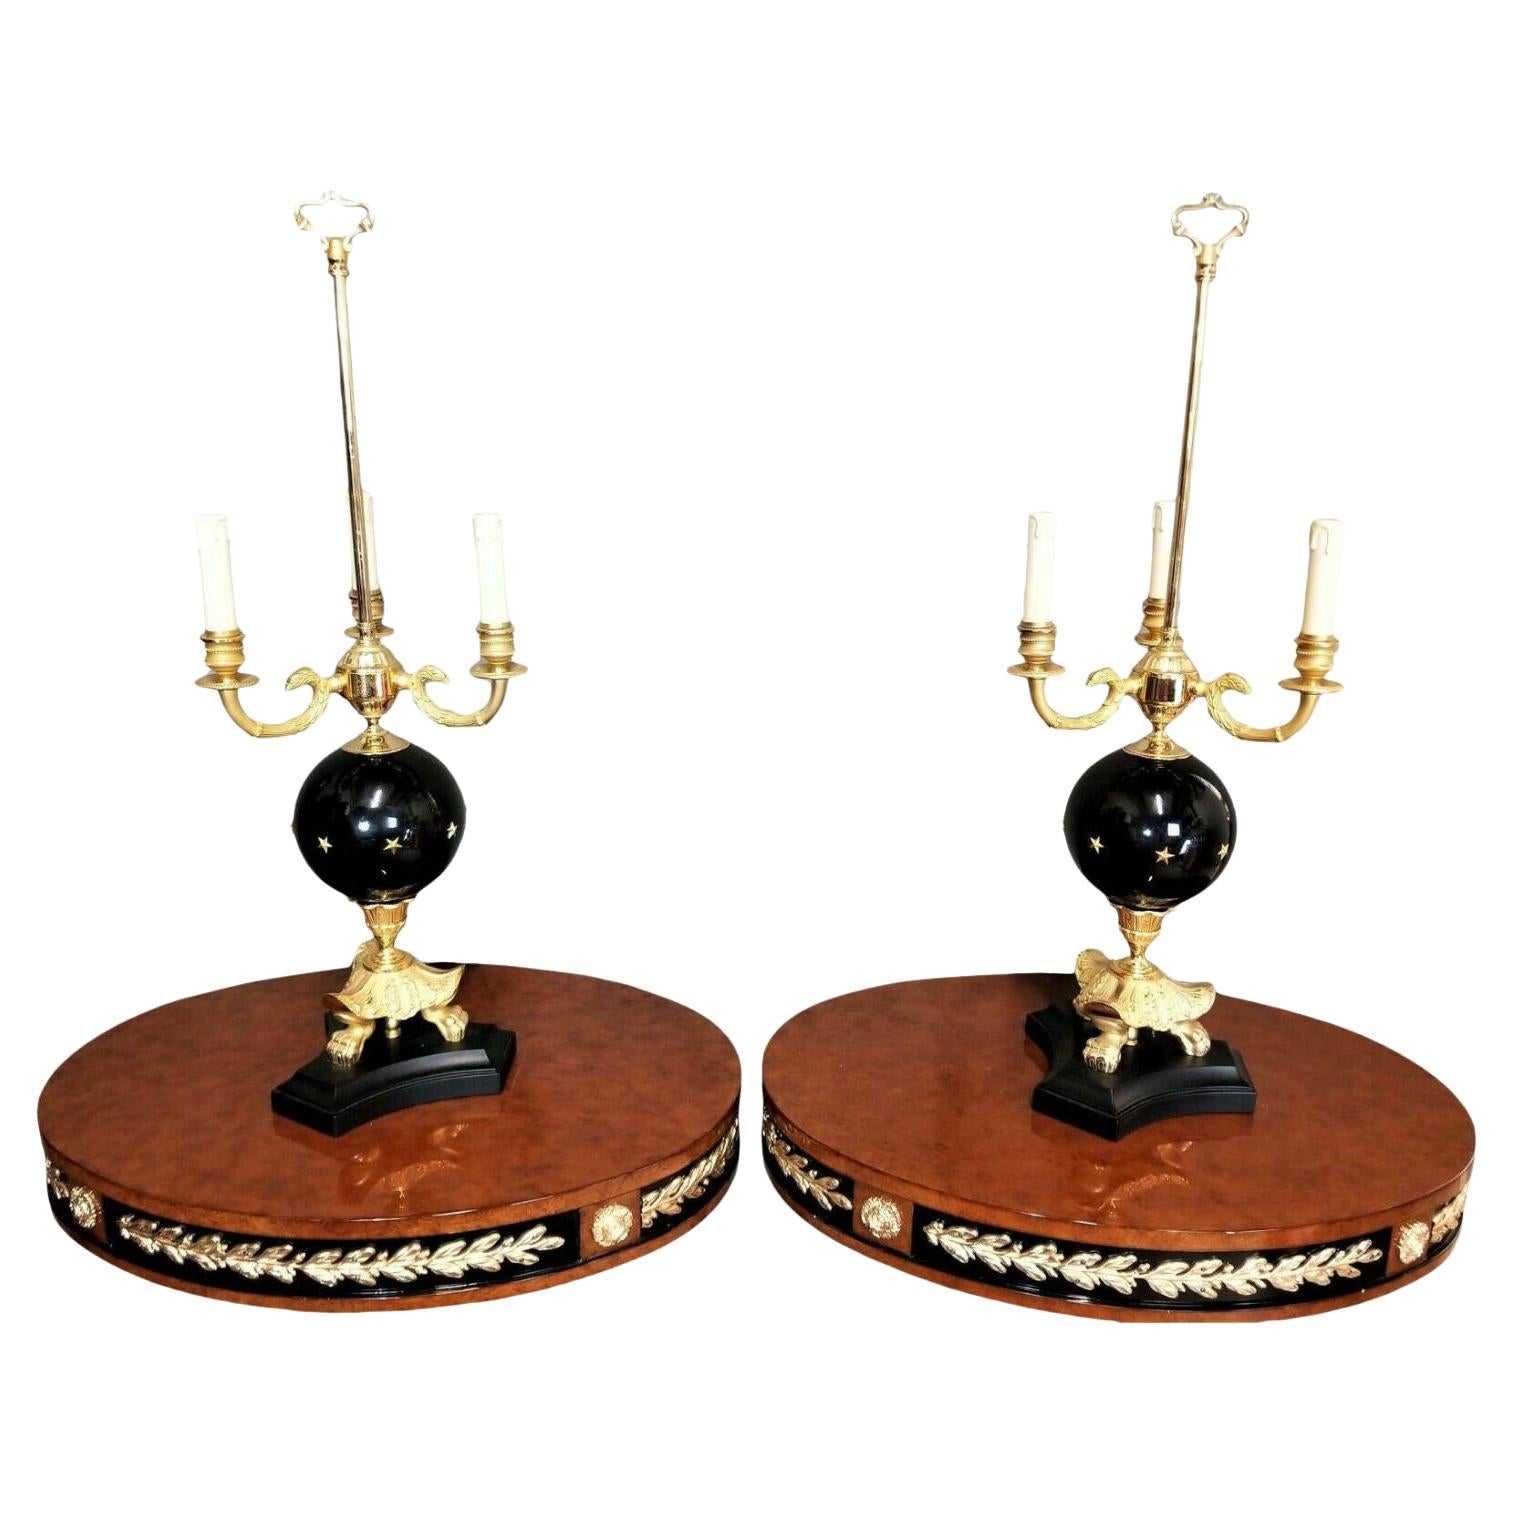 Laudarte Versace Billouette Candelabra Table Lamps, a Pair